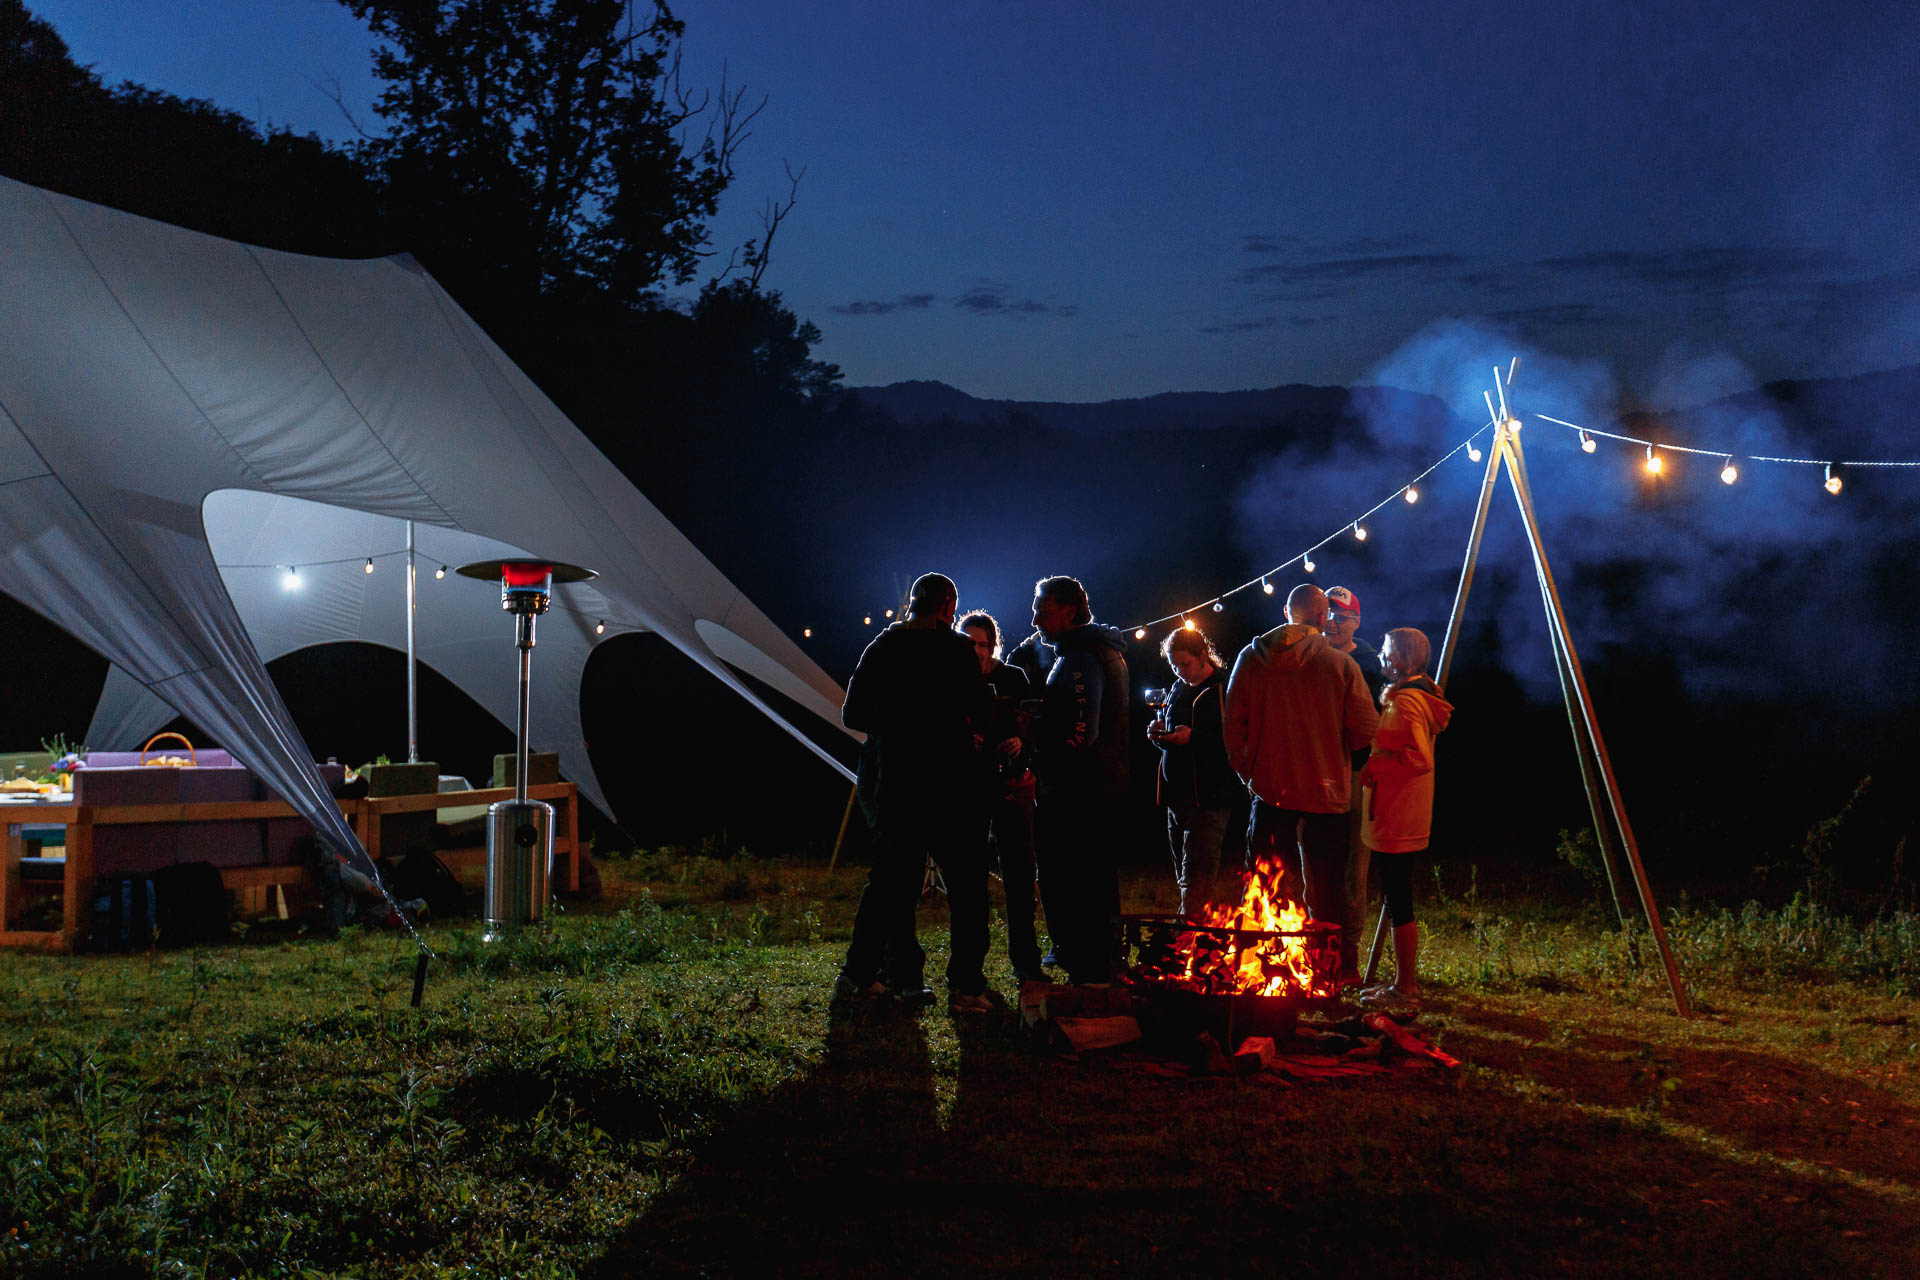 Группа друзей, наслаждающихся теплым костром спокойным вечером, с большой палаткой и гирляндами на улице